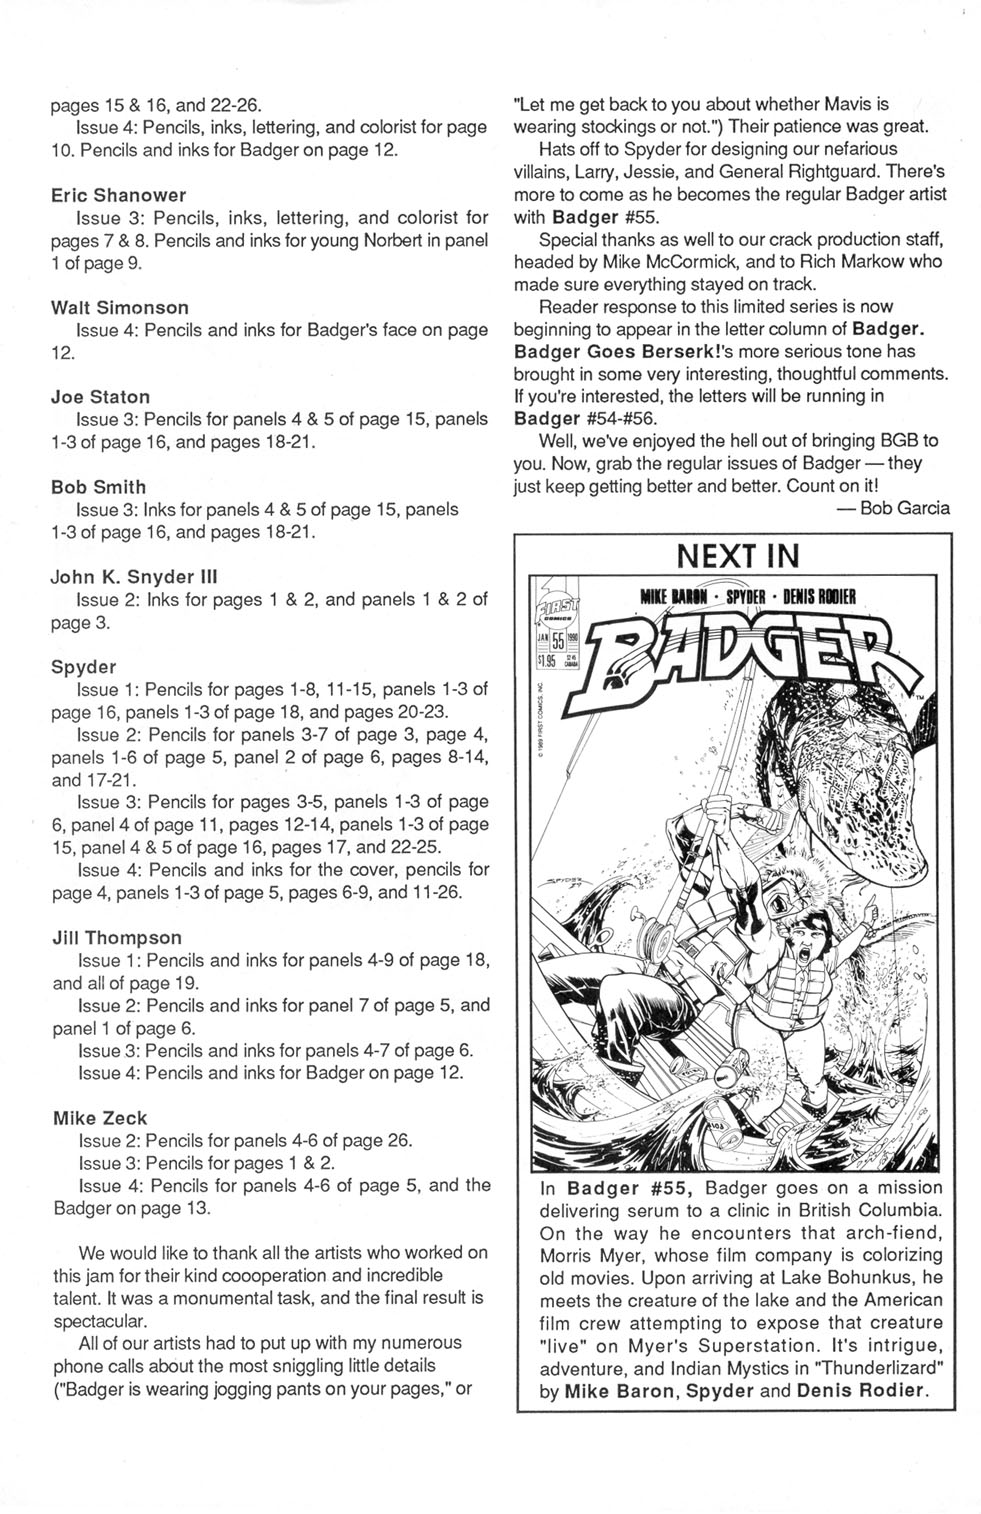 Read online Badger Goes Berserk! comic -  Issue #4 - 30